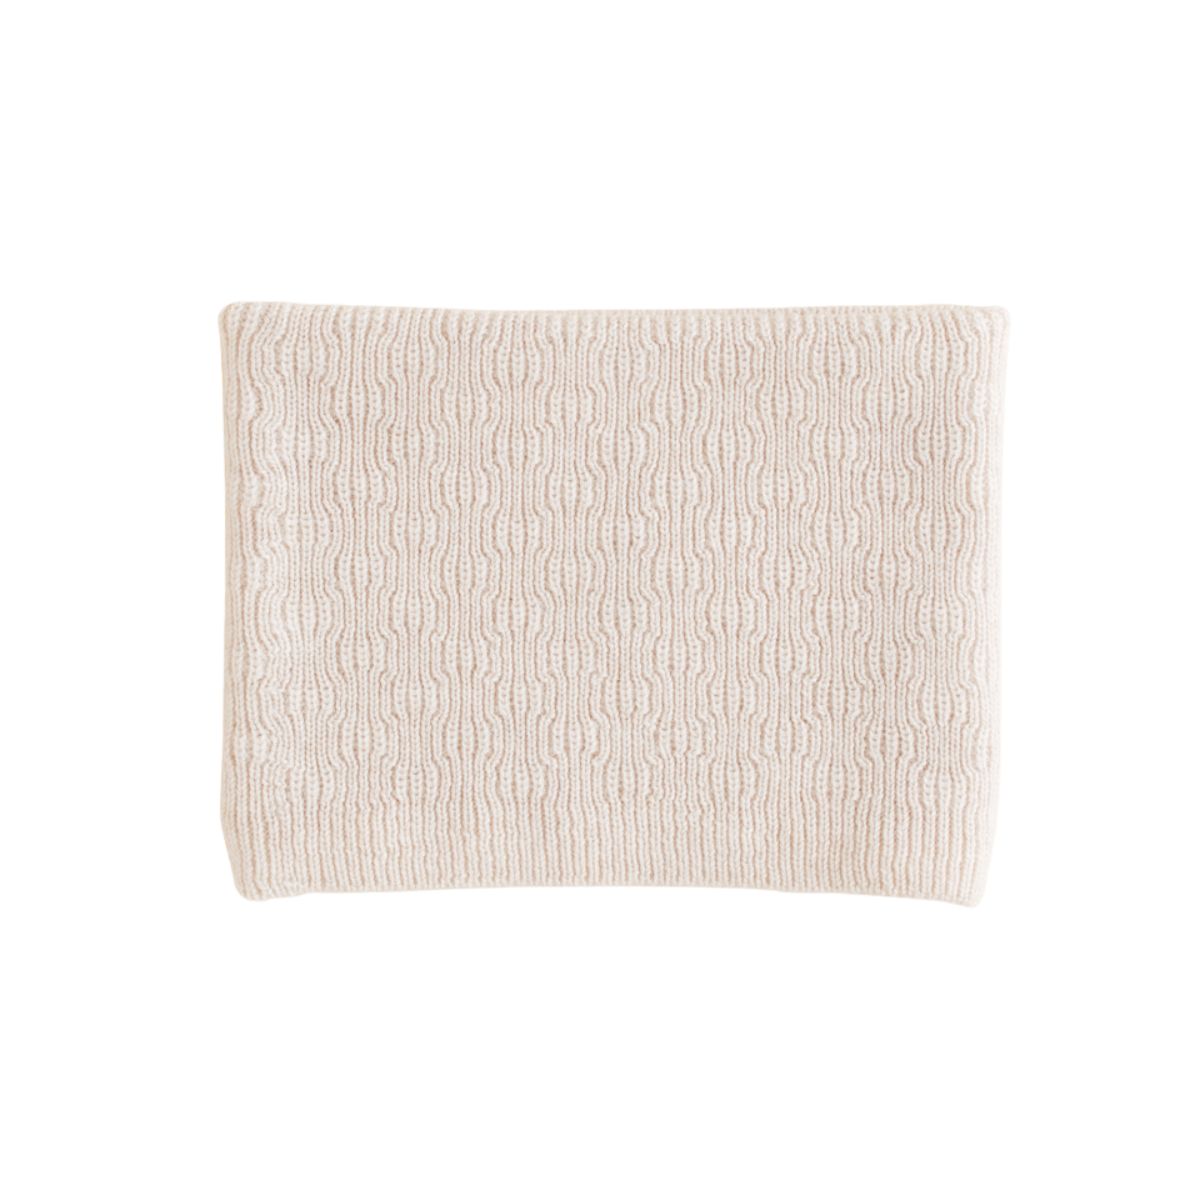 Lekker warm & stijlvol: de colsjaal gigi in de kleur cream van Hvid. Een prachtig gebreide sjaal, gemaakt van zachte merinowol. Comfortabel en hip! In verschillende kleuren. Combineer met bijpassende muts. VanZus